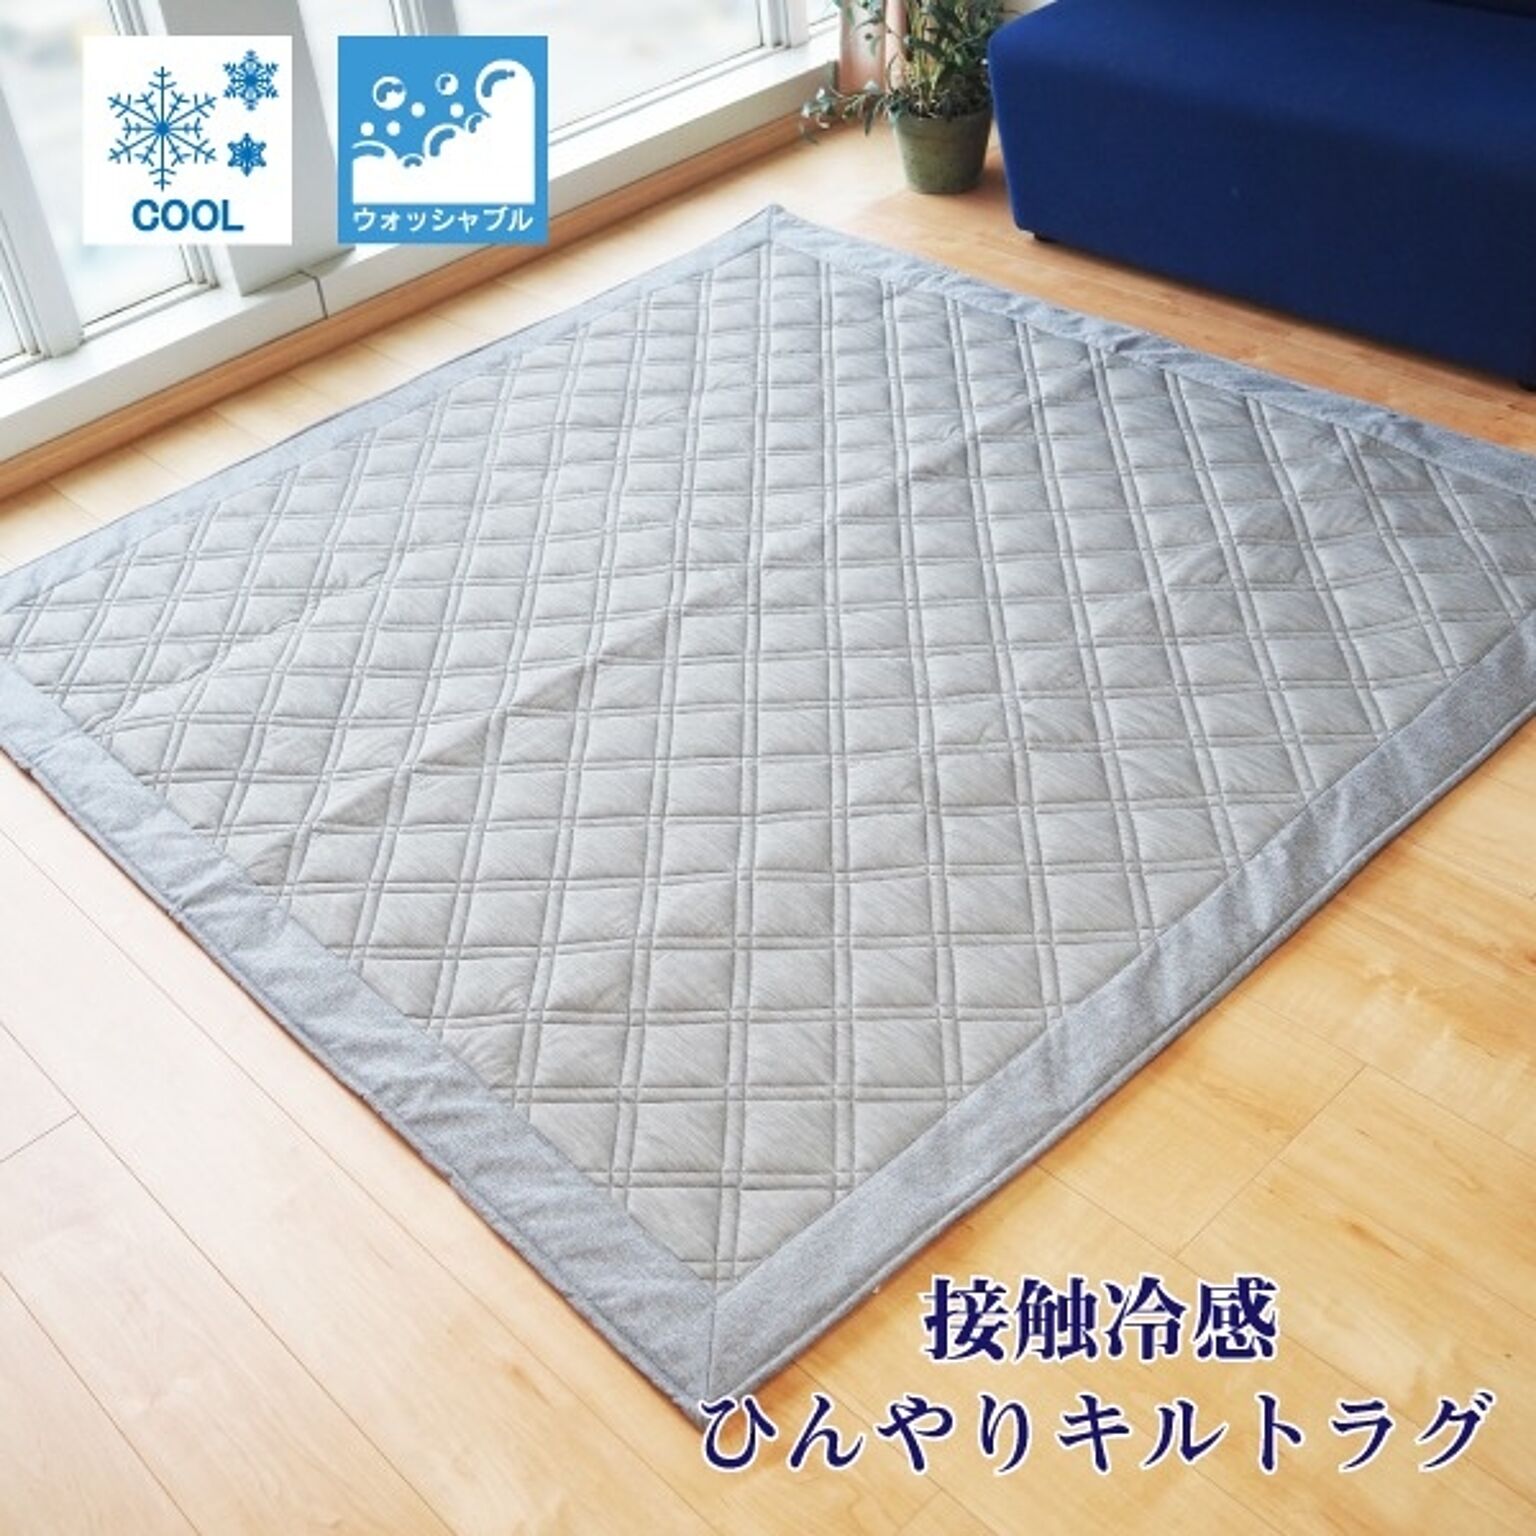 ラグマット 絨毯 約2畳 約180cm×180cm グレー 洗える お手入れ簡単 COOL 接触冷感 ひんやりラグ リビング ダイニング【代引不可】